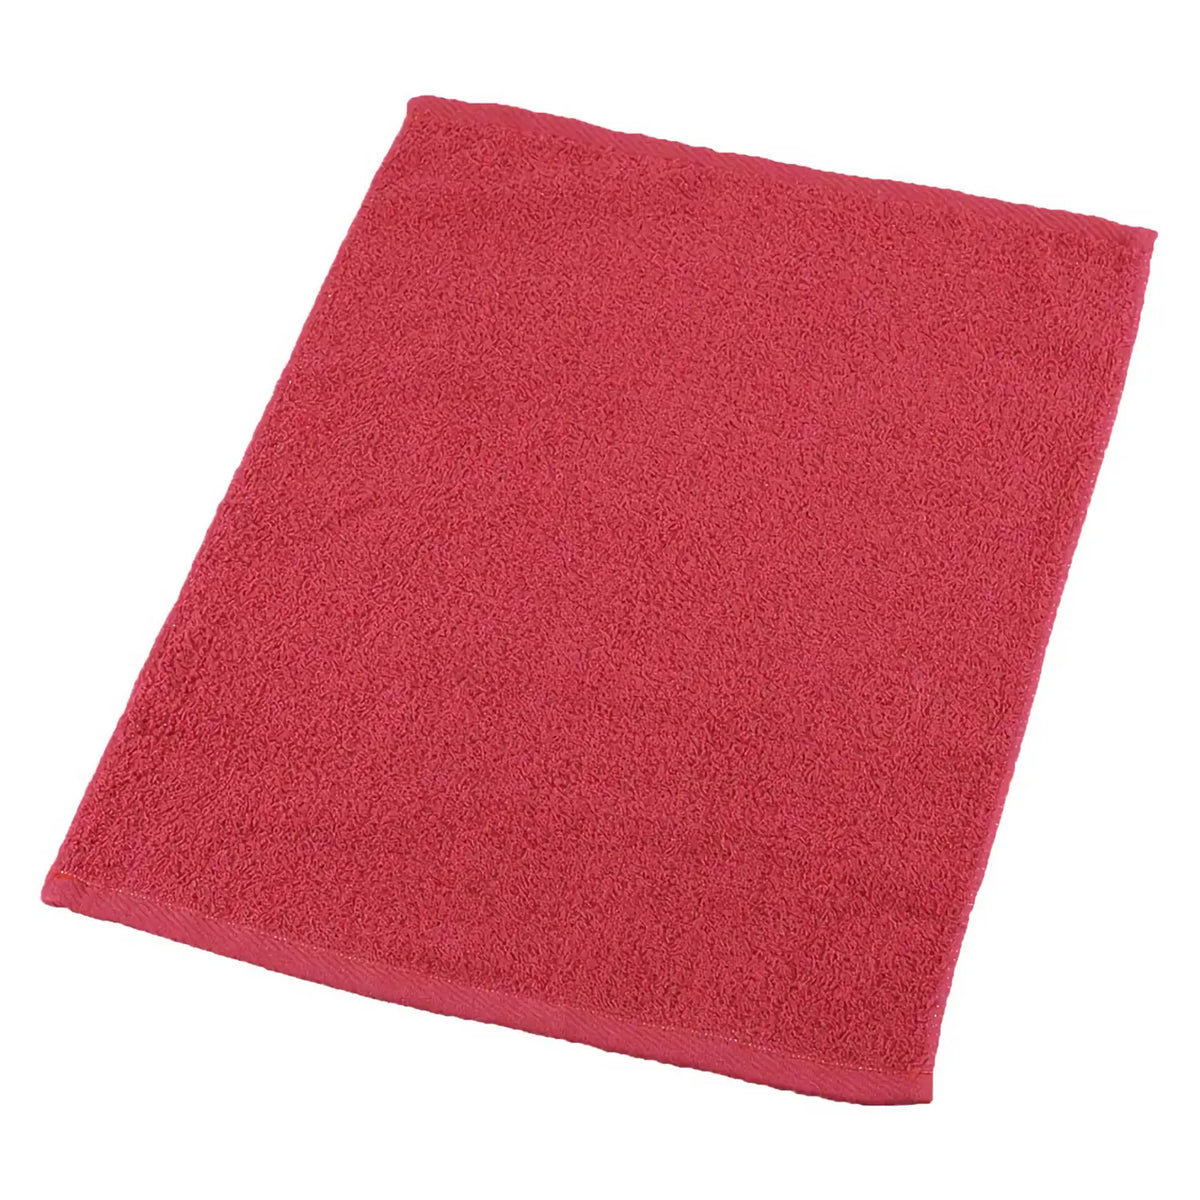 μ-func. Cotton Antibacterial Oshibori Towel 340x440mm 12 pcs